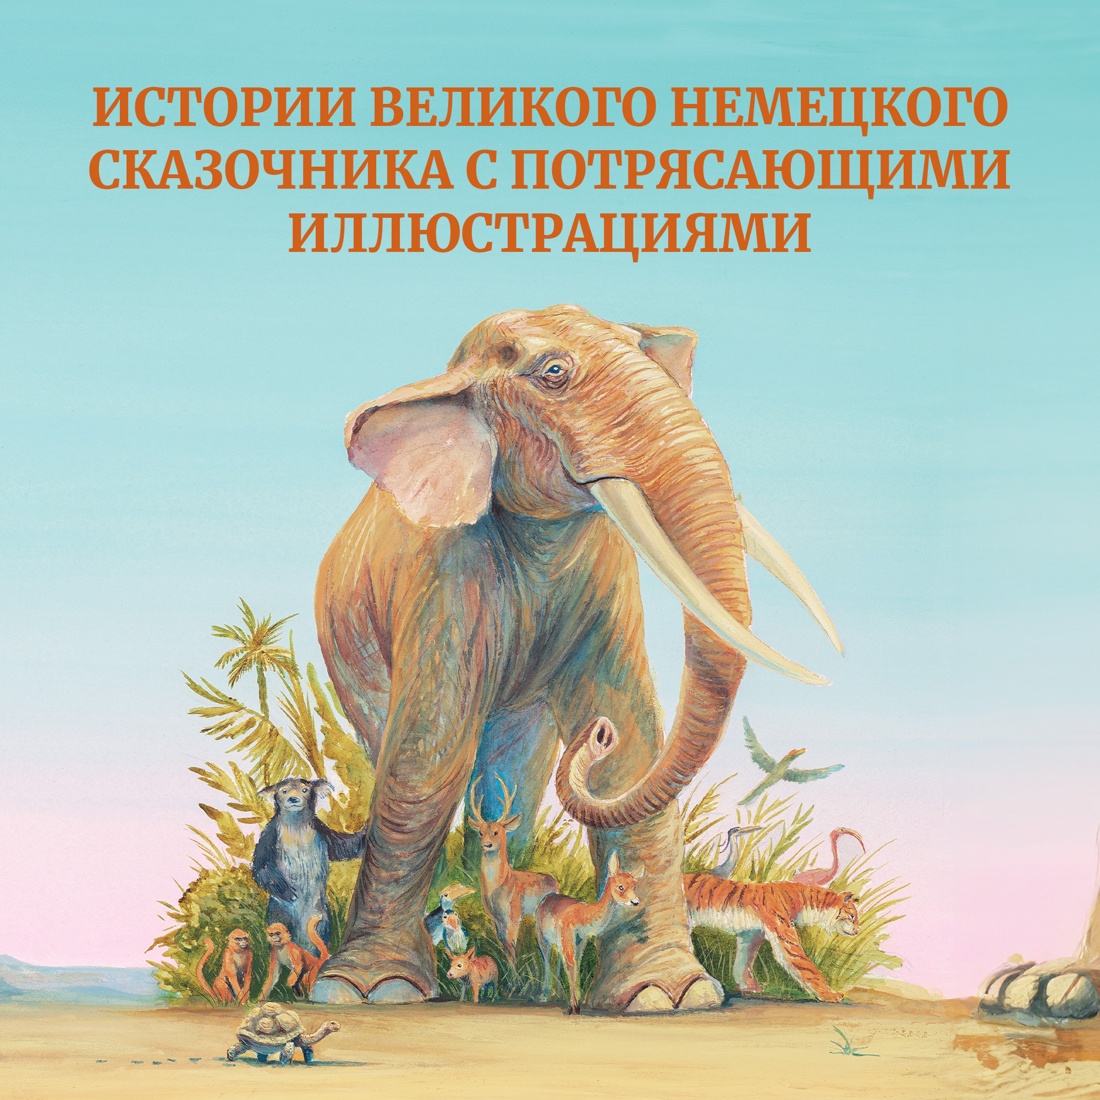 Промо материал к книге "Самые красивые сказки о животных" №0